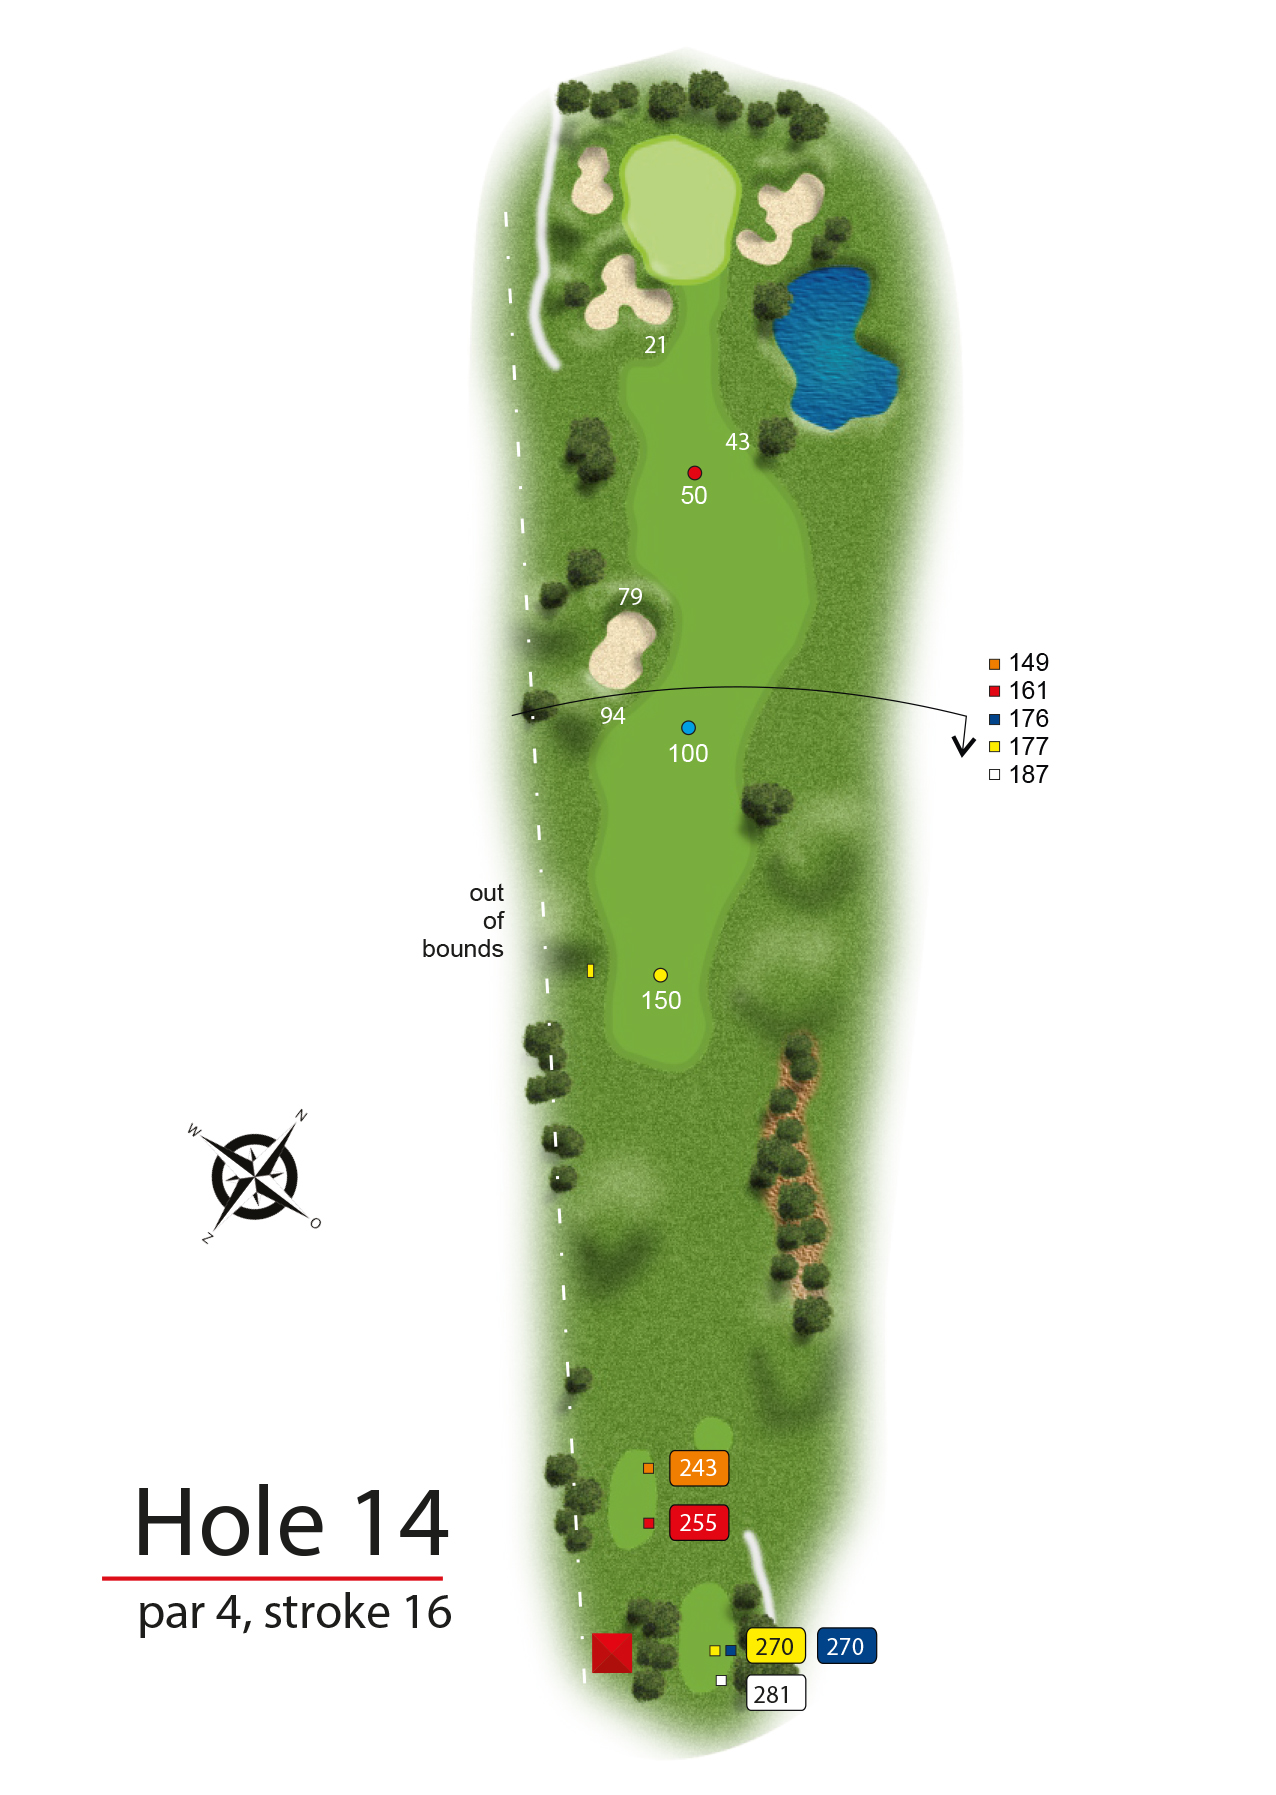 Hole 14 - simple